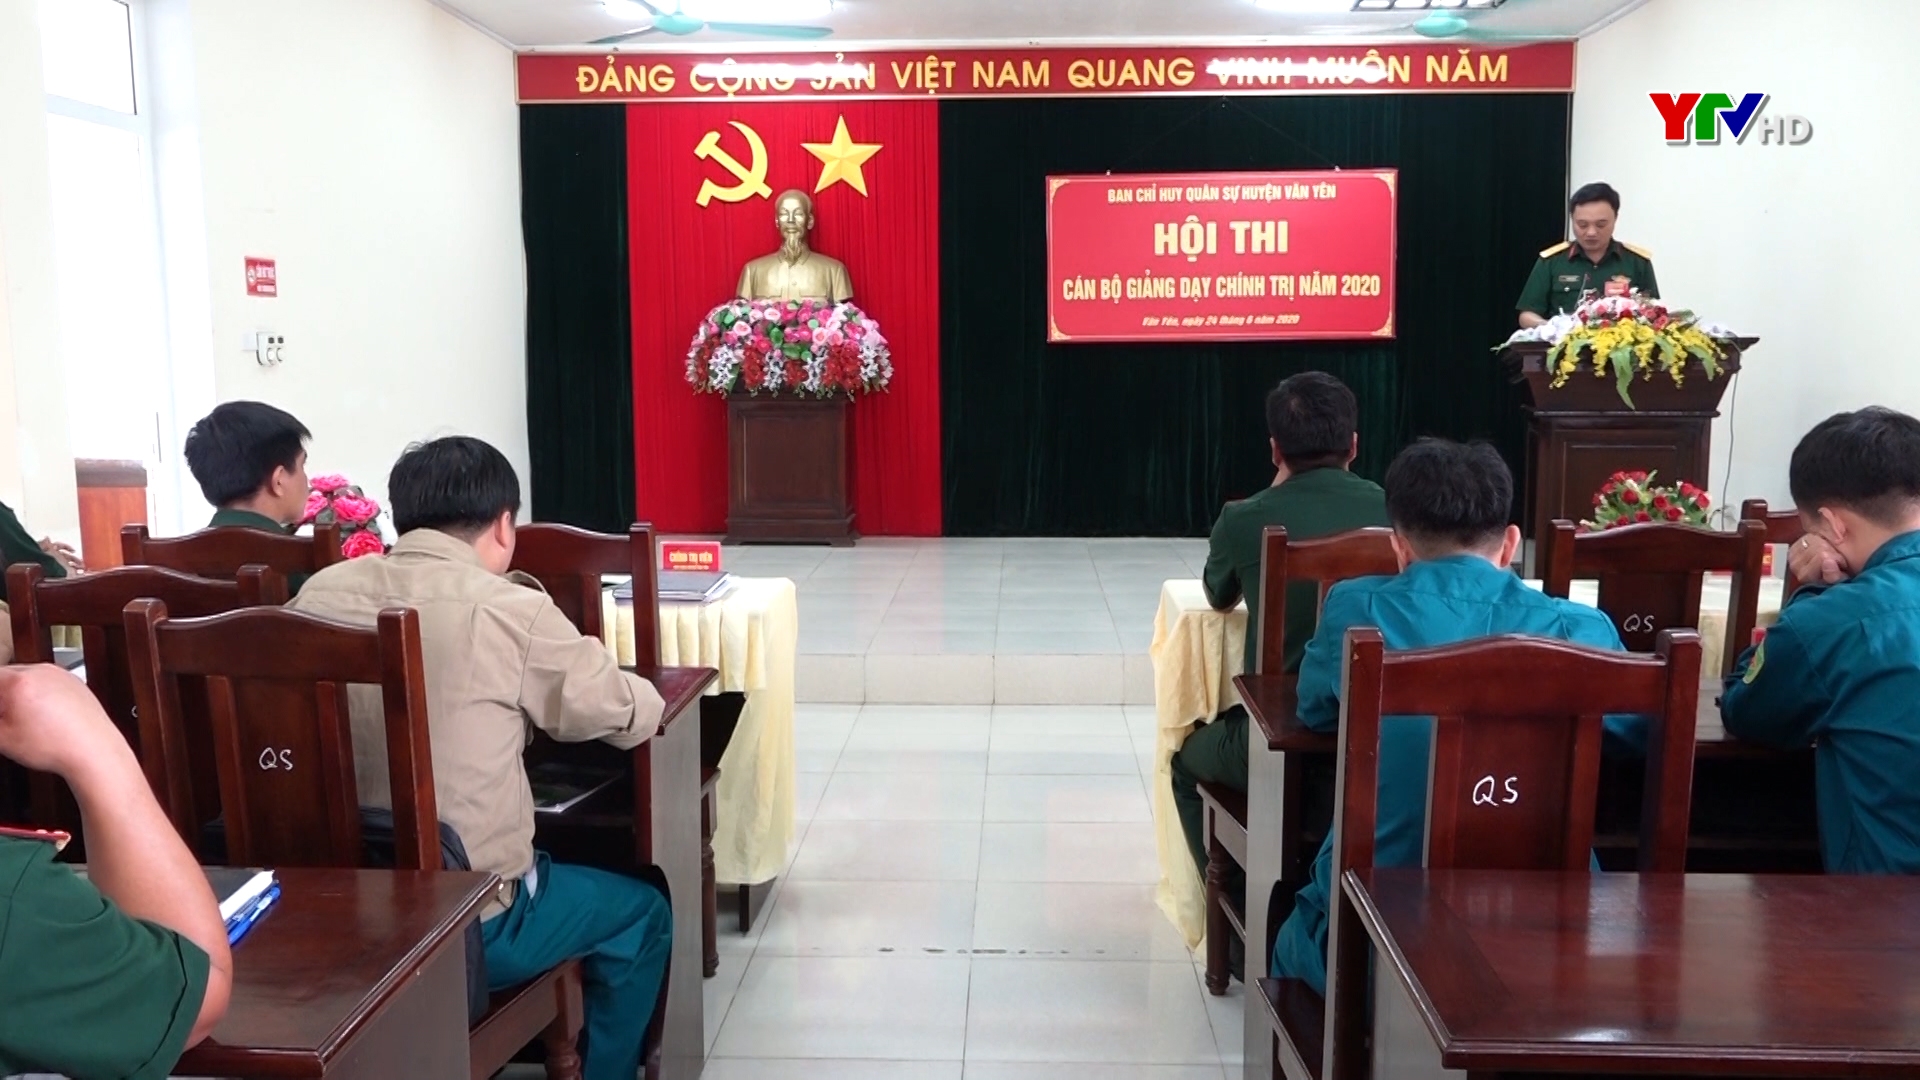 Văn Yên tổ chức Hội thi “ Cán bộ giảng dạy chính trị năm 2020”